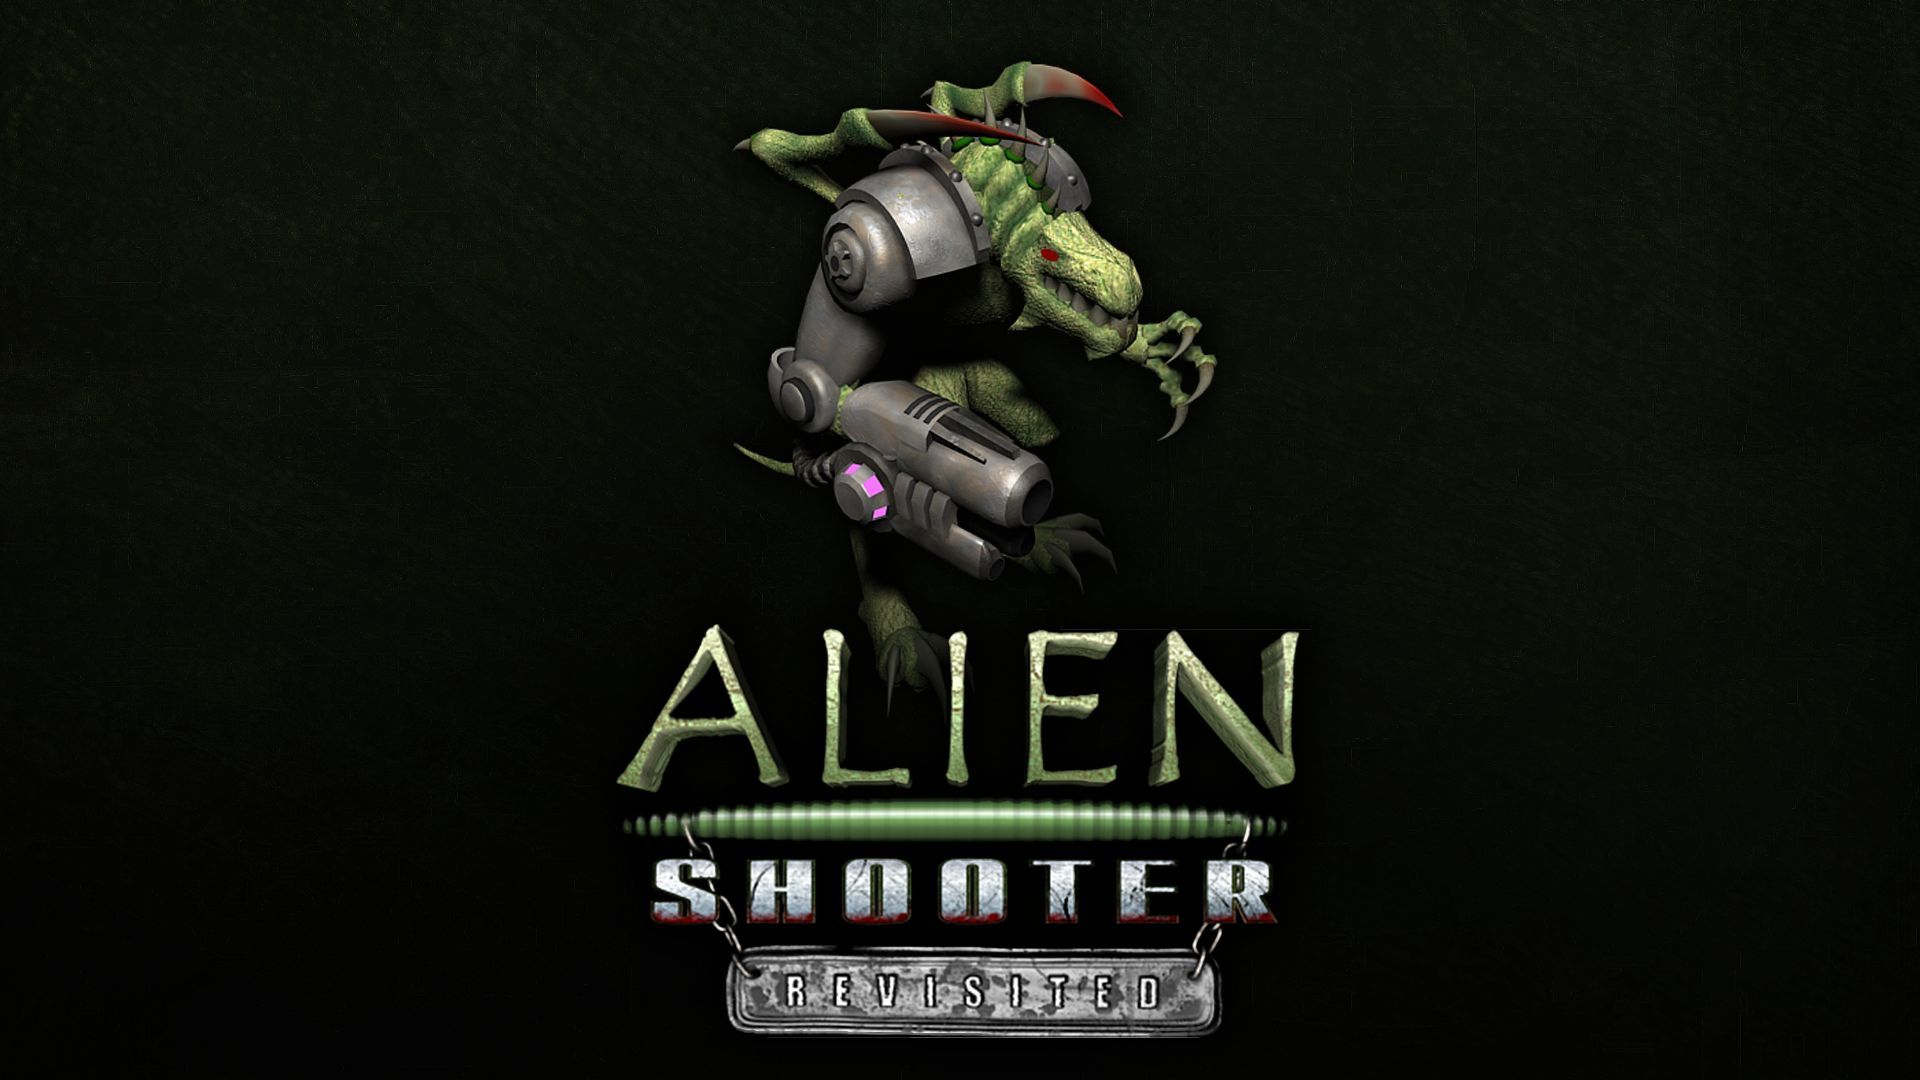 Alien shooter steam фото 105